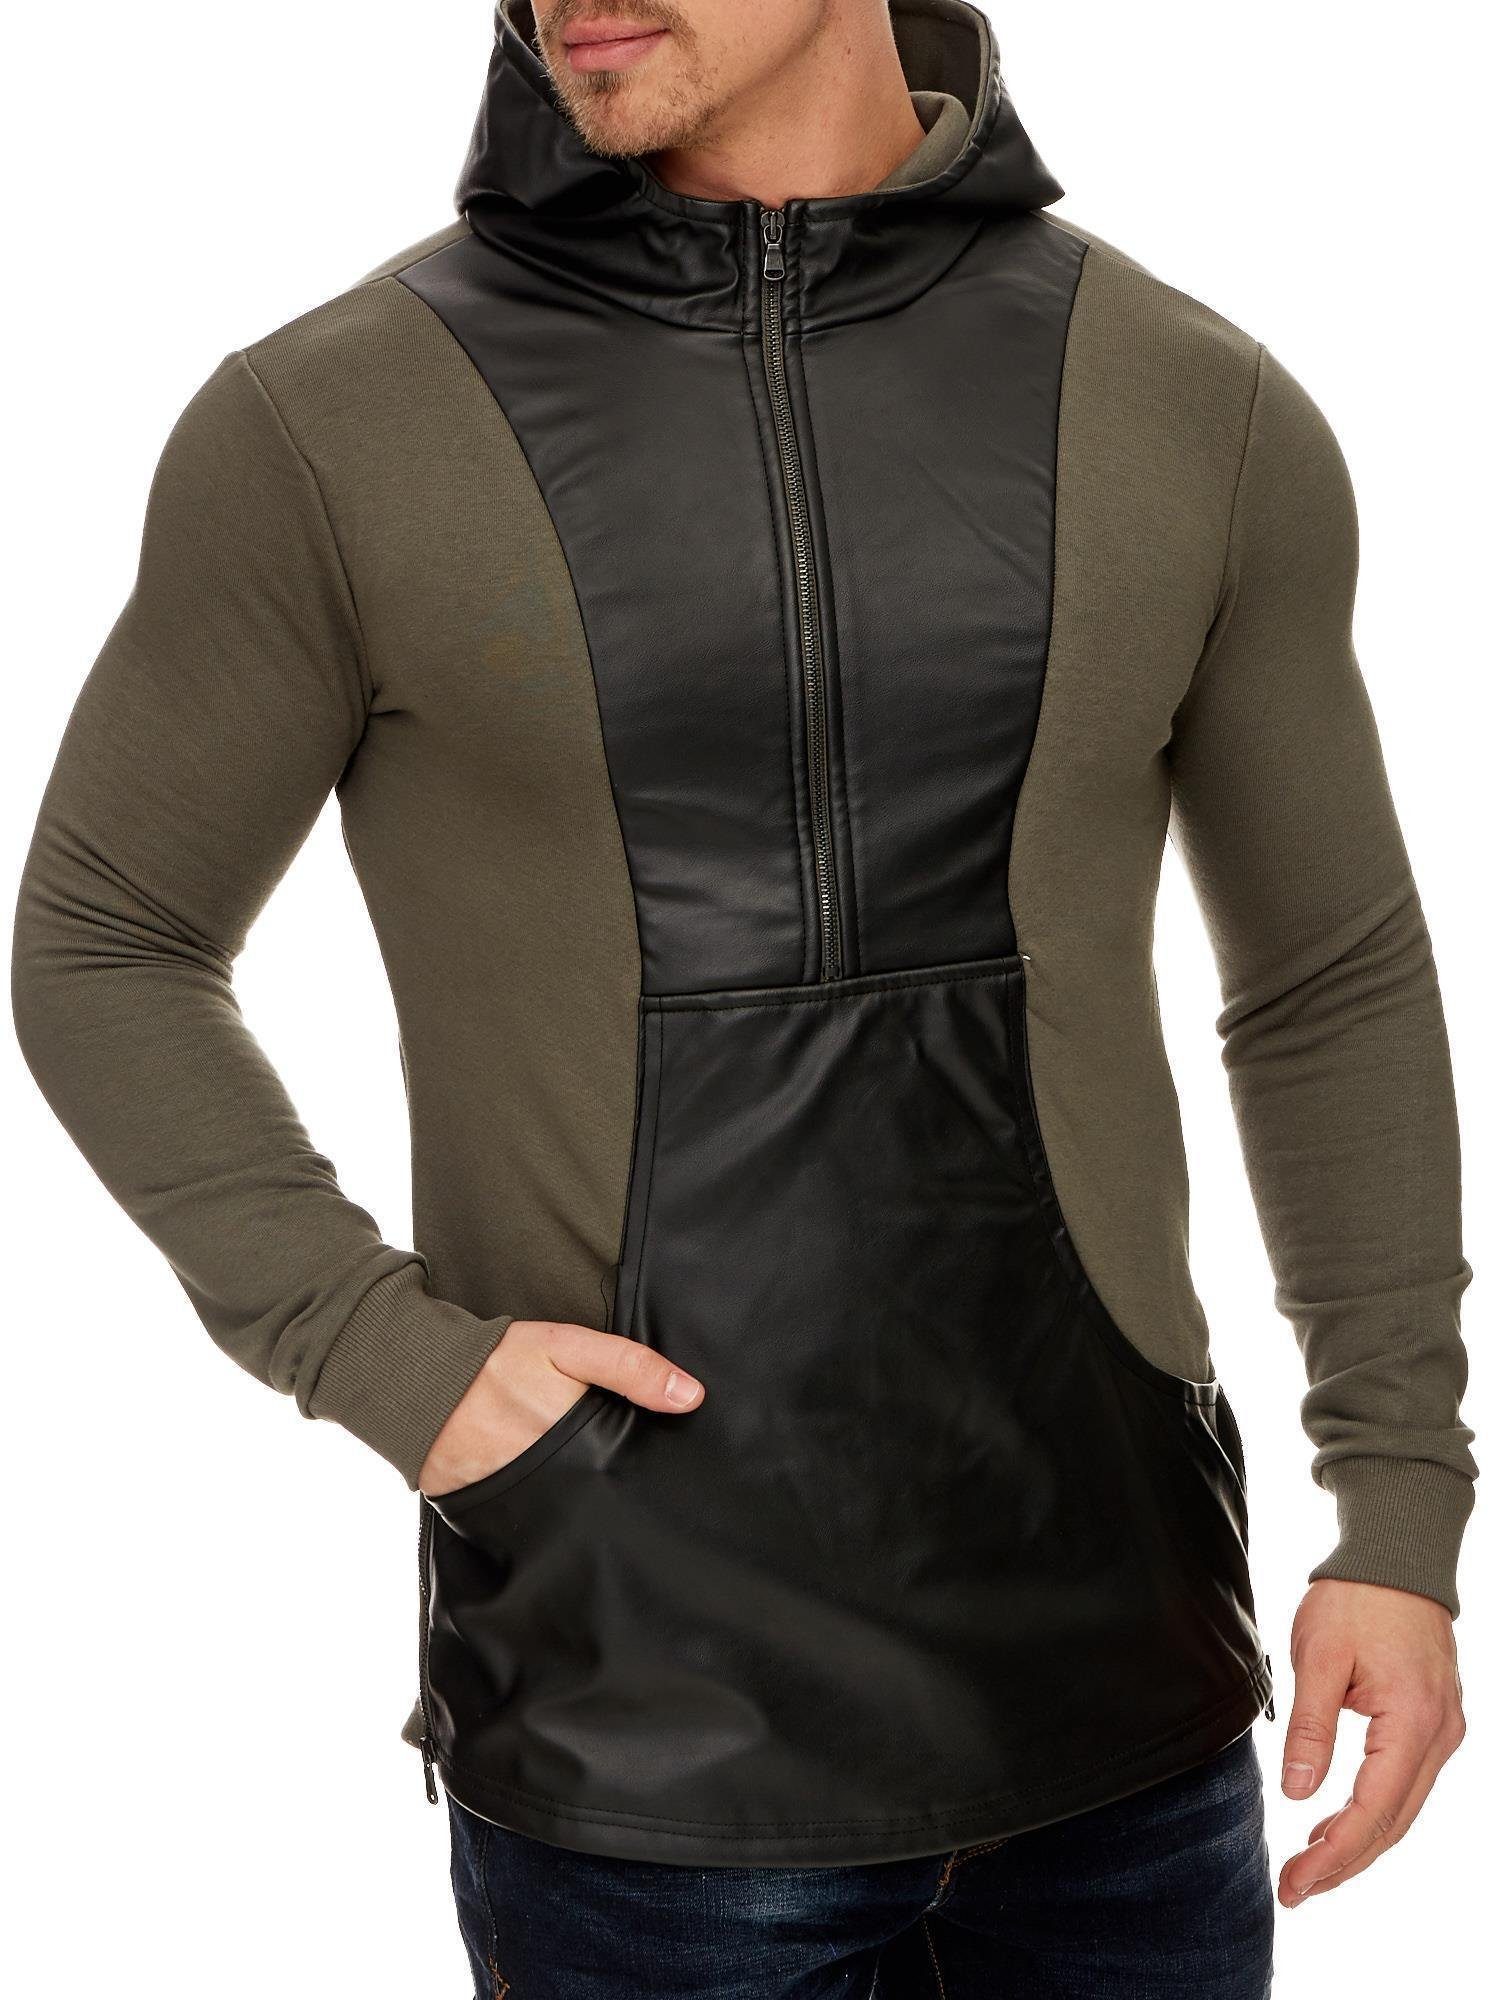 Tazzio Sweatshirt Oversize modisches Kapuzensweatshirt khaki-1216